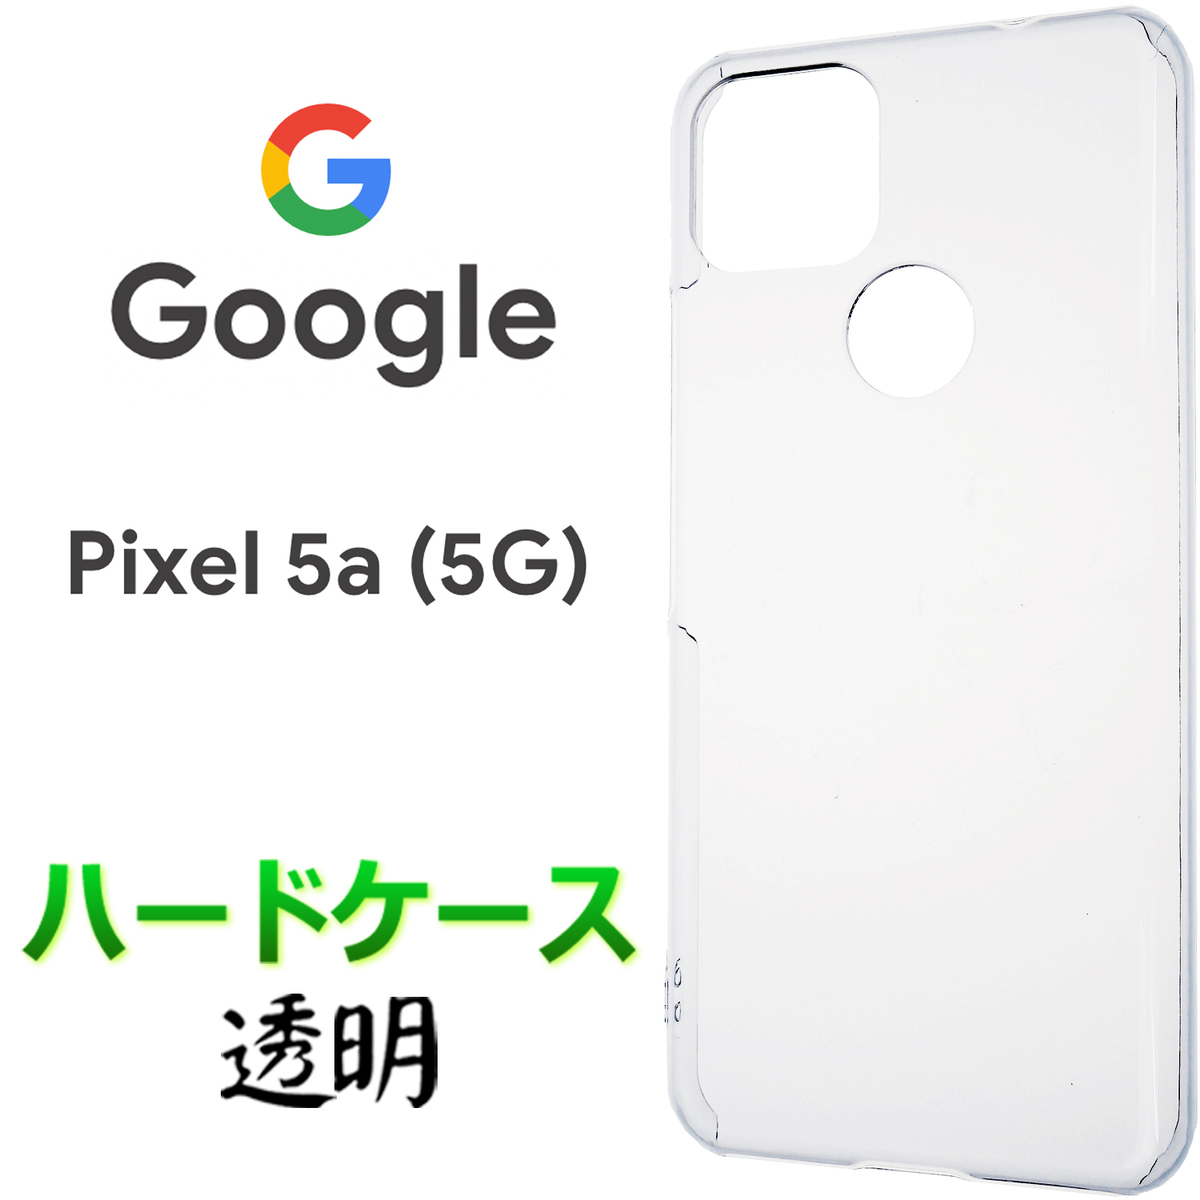 市場】ブルーライトカット 液晶保護 Google Pixel 5a 5G ガラスフィルム 強化ガラス 2.5D 画面保護 液晶保護 飛散防止  指紋防止 硬度9H クリーナーシート付き グーグル ピクセル ファイブエー ファイブジー ソフトバンク SIMフリー pixel5a  pixel5a5g : JETSmart